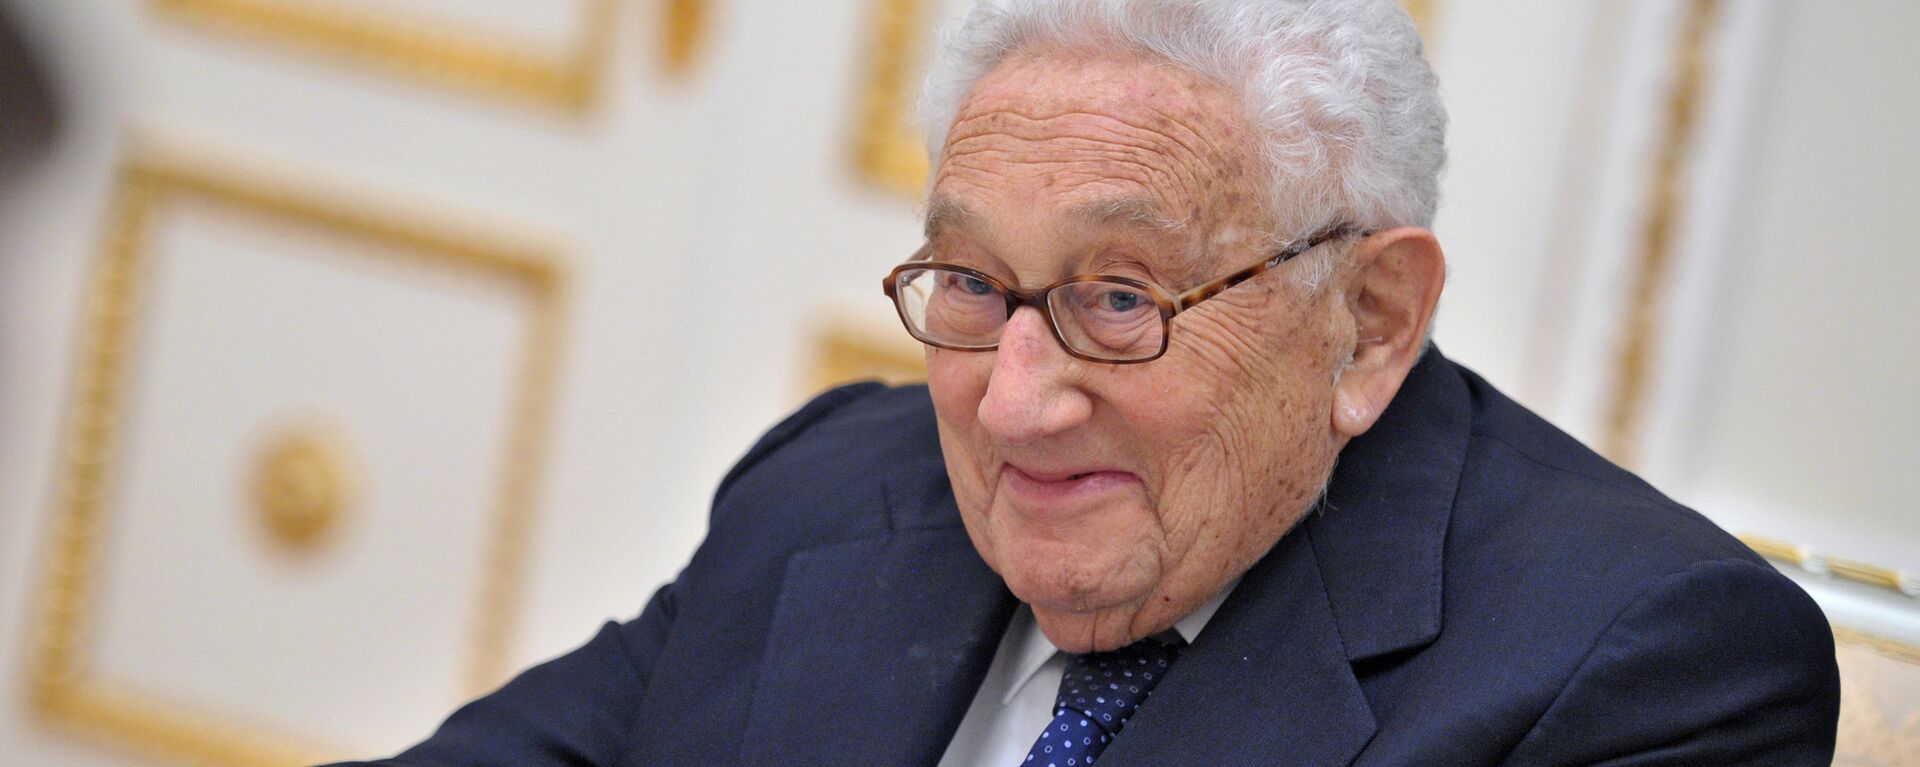 Henry Kissinger - Sputnik Mundo, 1920, 15.06.2017